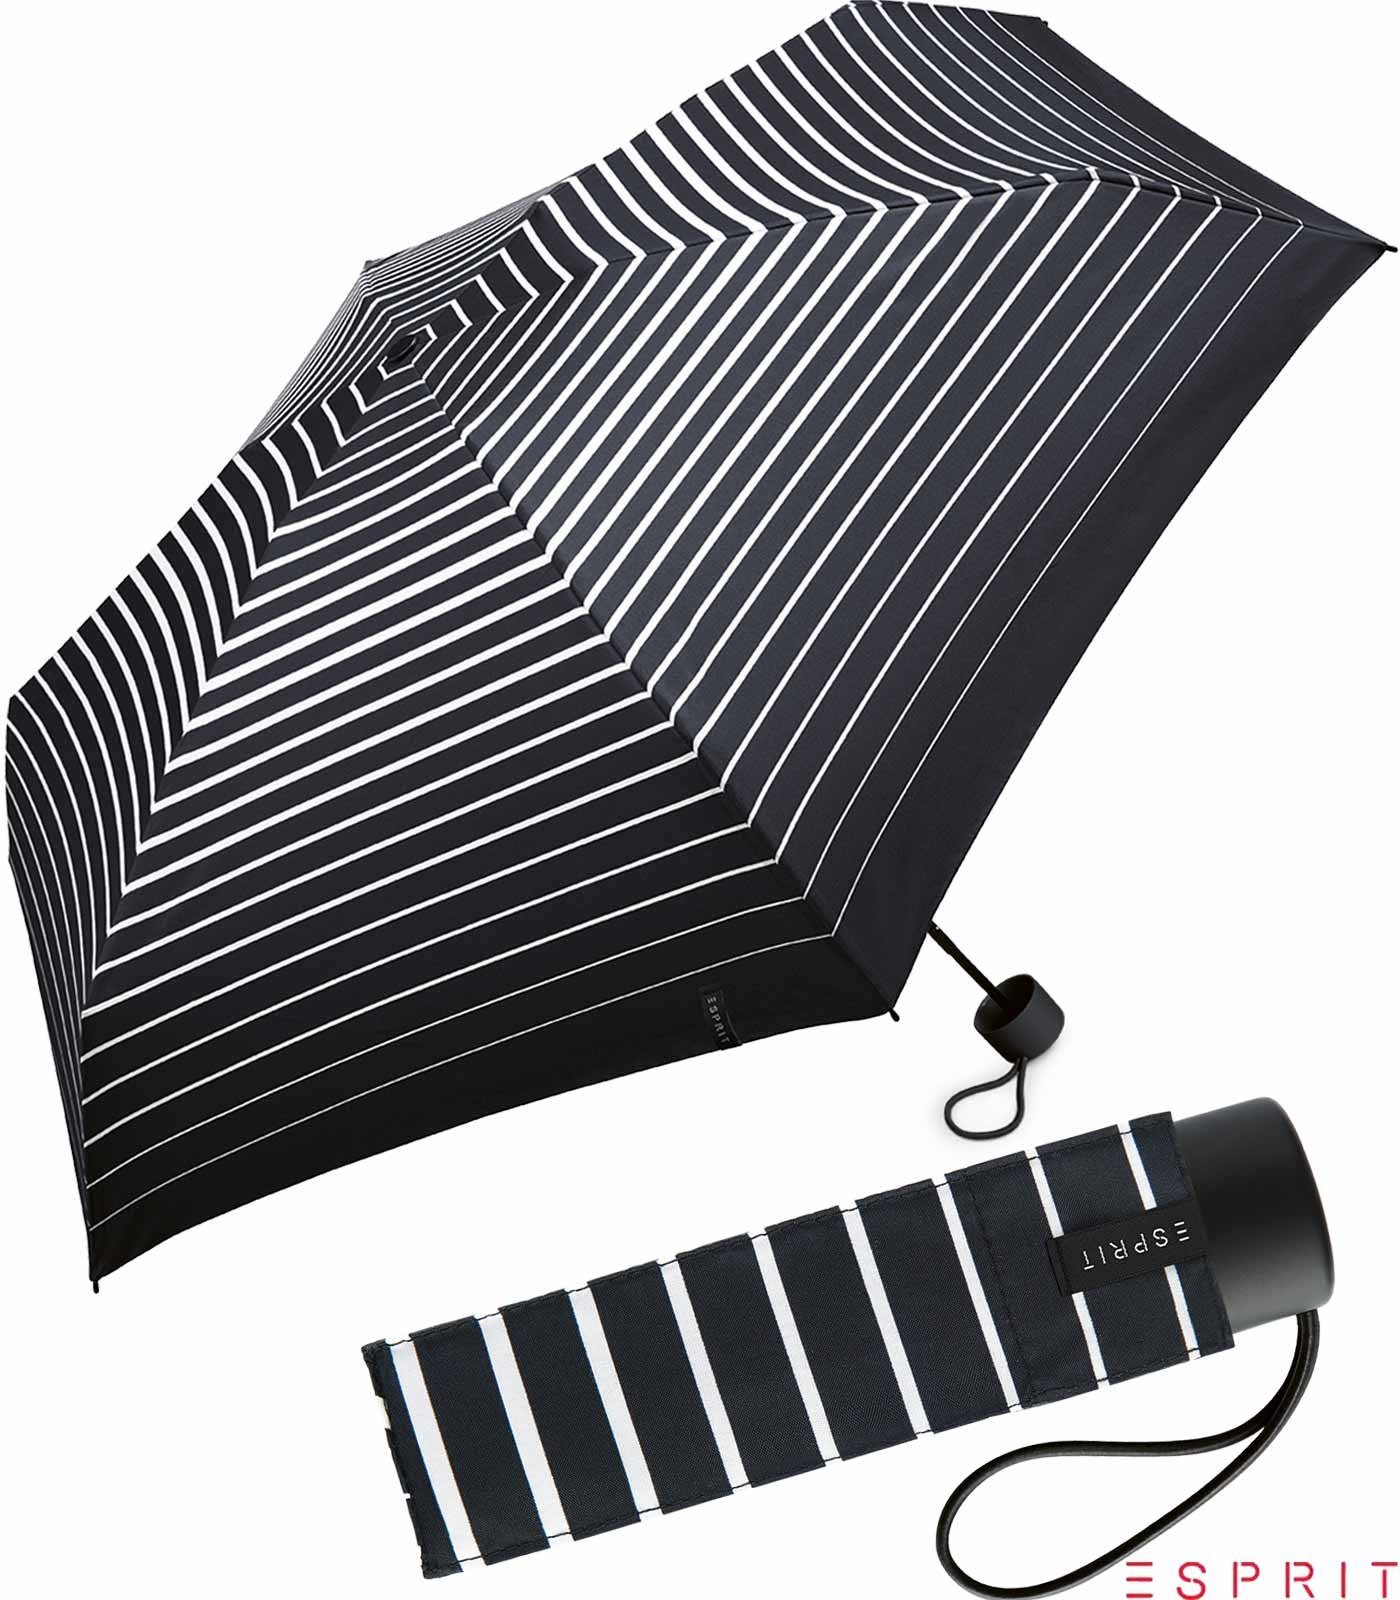 Degradee schwarz-weiß Super Petito Esprit - klein, moderner Damen Taschenregenschirm - Stripe black, Mini winzig in Streifen-Optik